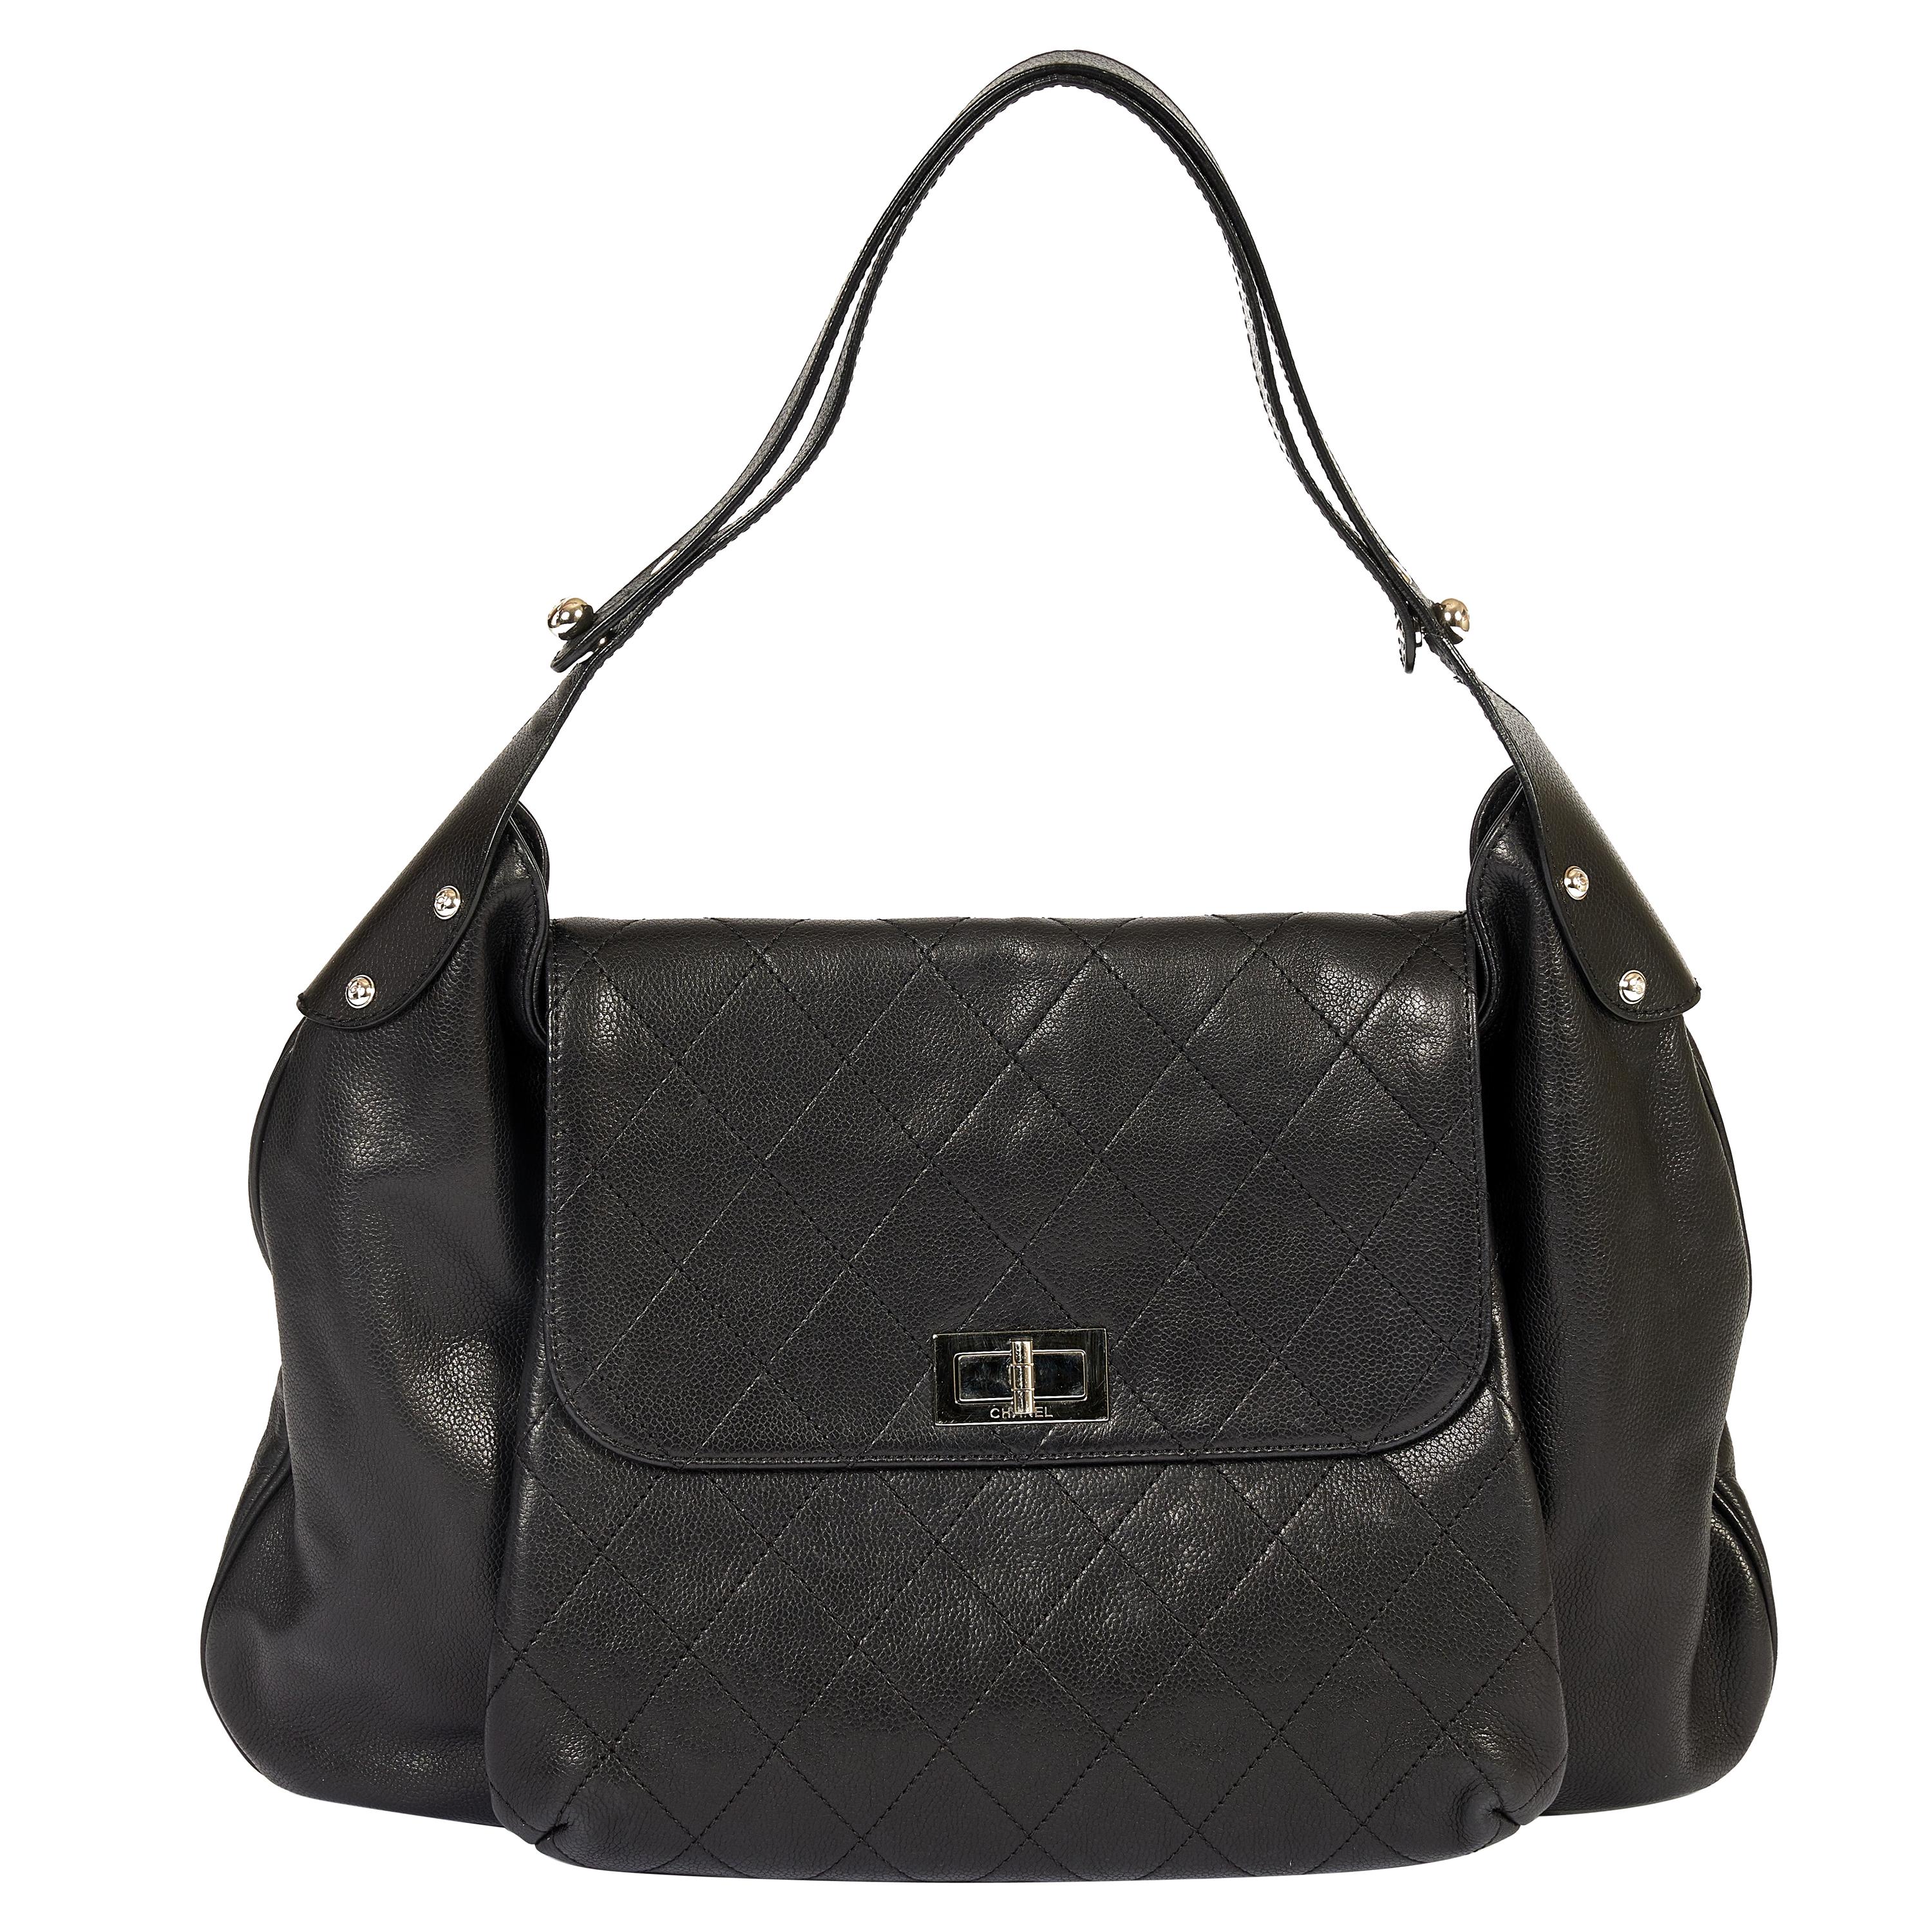 Chanel Black Caviar Leather Shoulder Bag For Sale